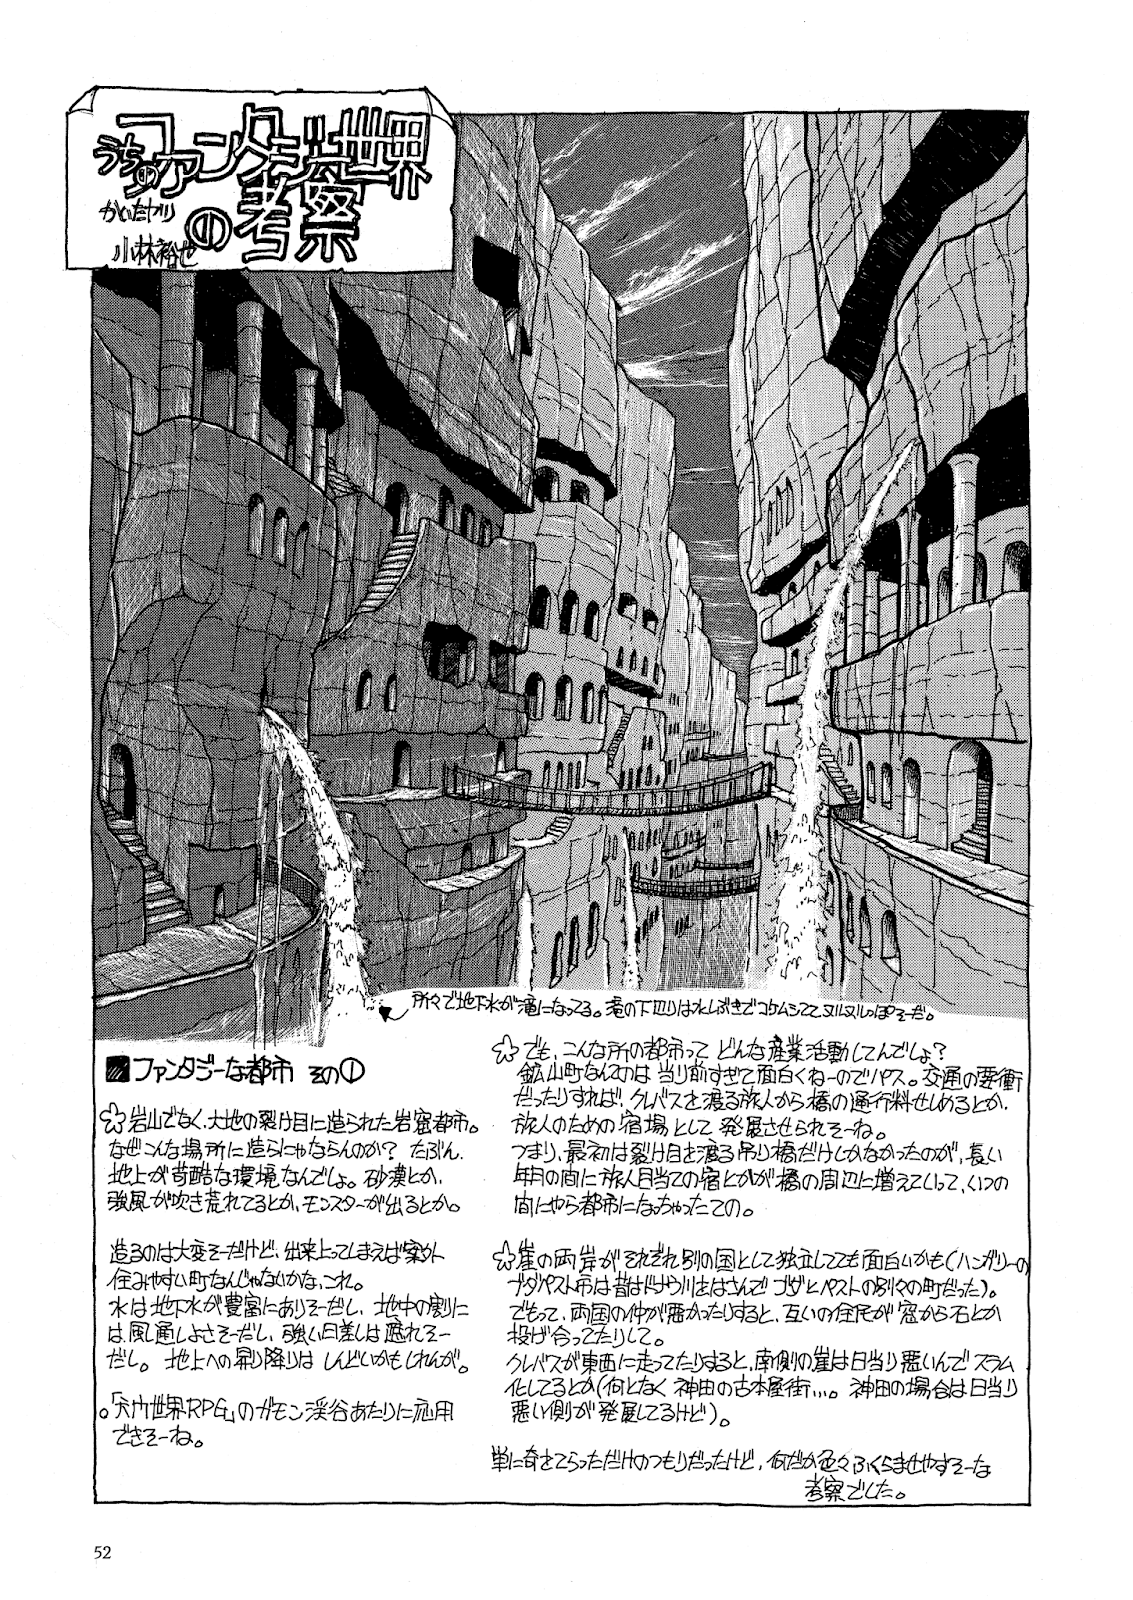 第52回 うちのファンタジー世界の考察 大地の裂け目に造られた岩窟都市 パンタポルタ